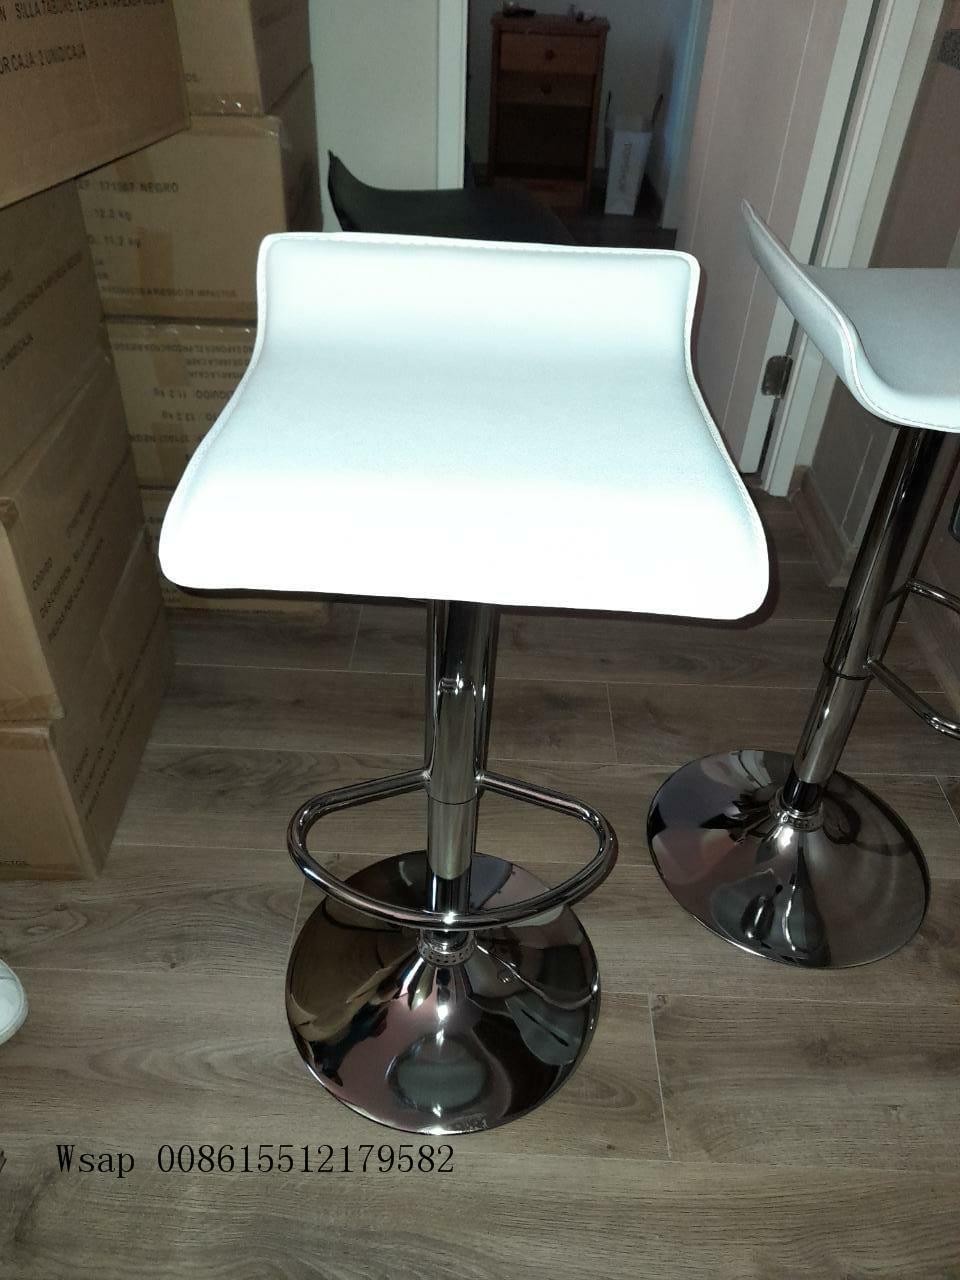 Silla De Barra Assise Tabouret De Bar Dining Table High Chair Counter Seats Modern High Metal Barstools